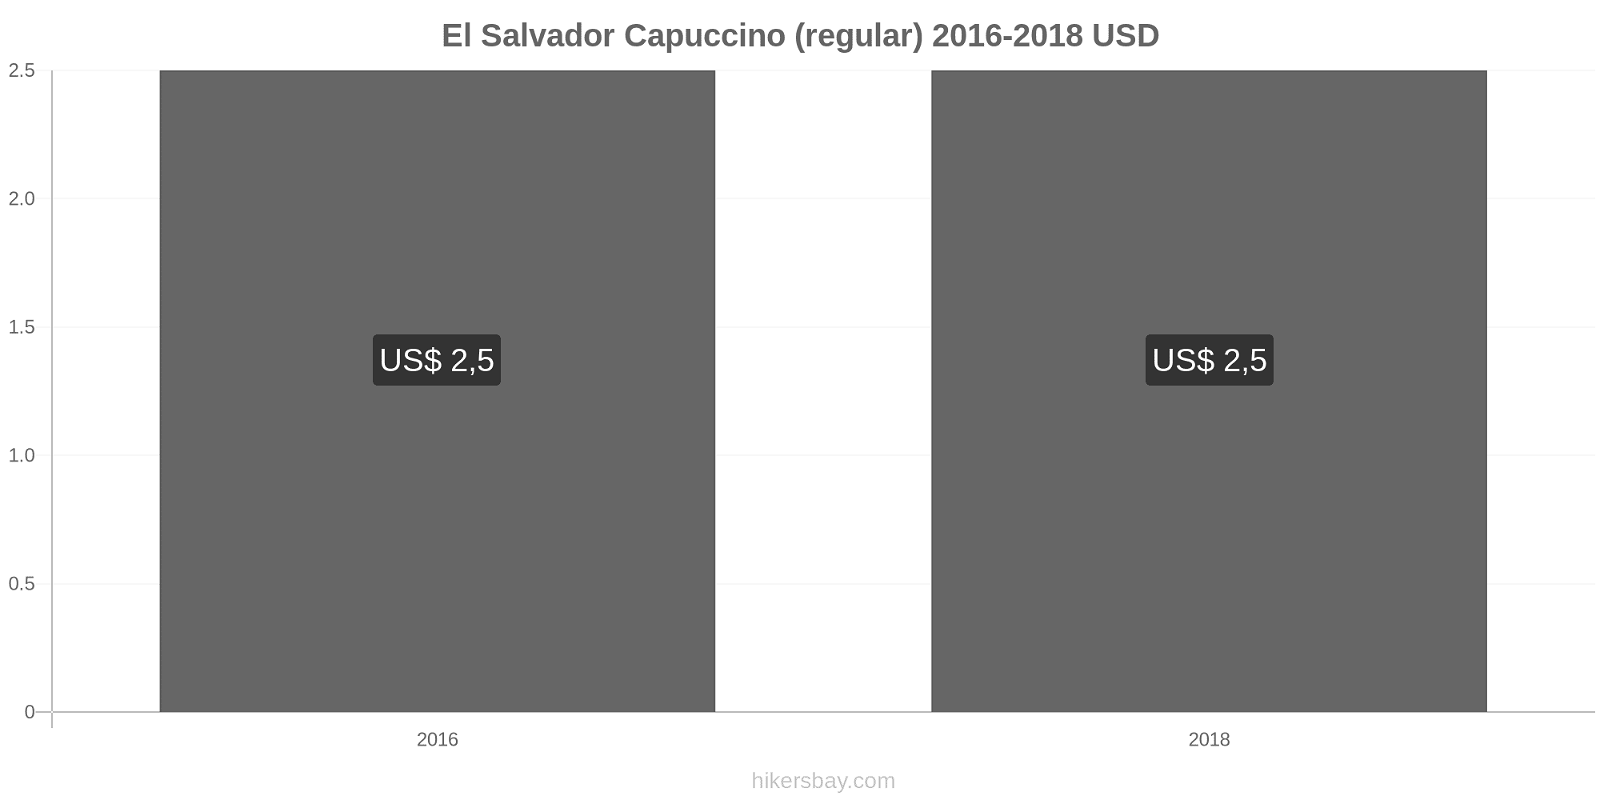 El Salvador mudanças de preços Cappuccino hikersbay.com